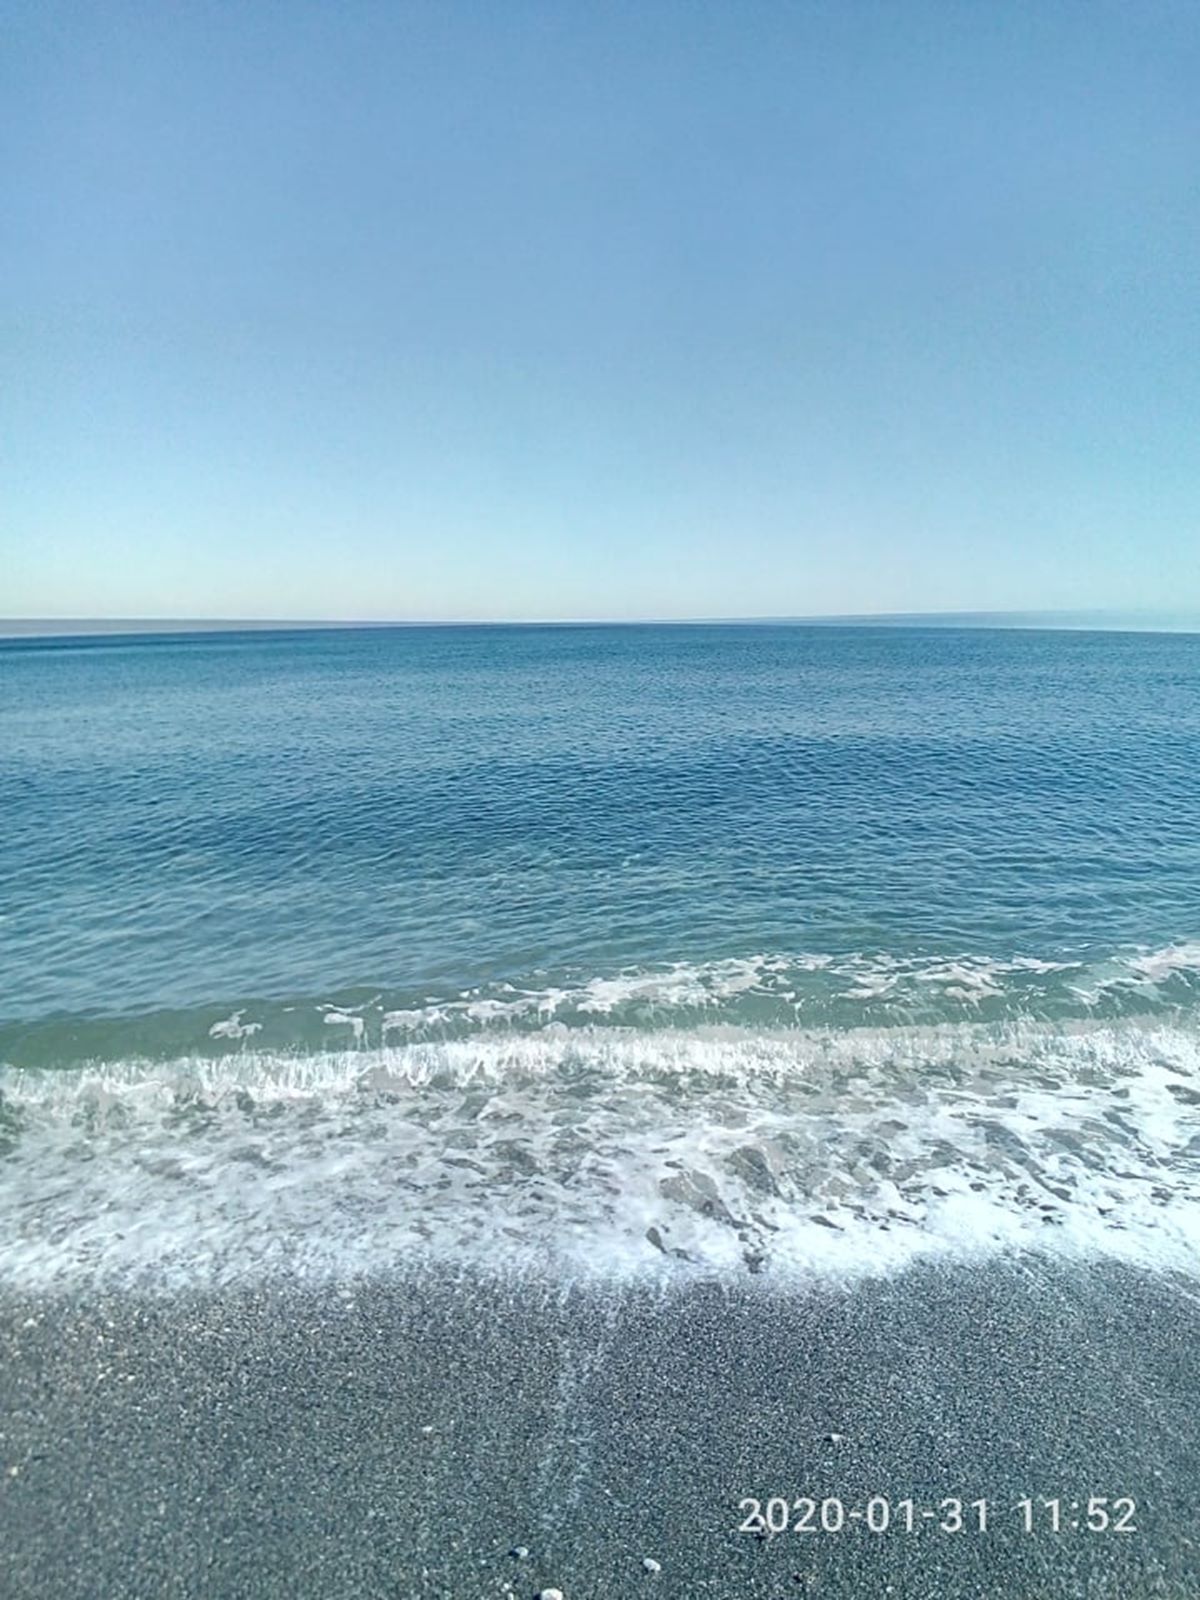 Καλοκαιρινή μέρα και θάλασσα «λάδι» μέσα στο... καταχείμωνο στον Αγιόκαμπο (φωτο)